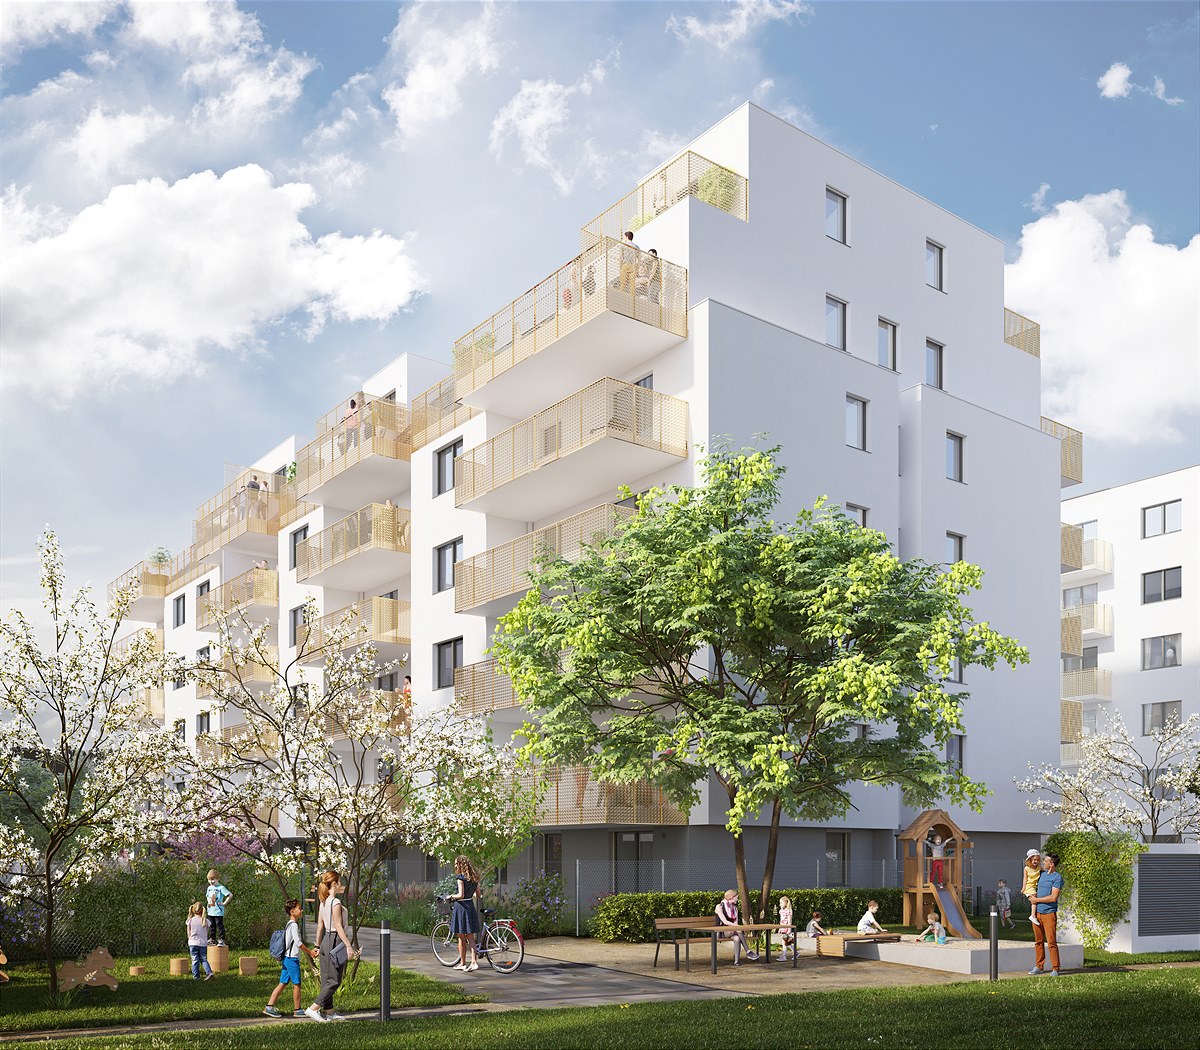 Das Wohnbauprojekt Grosses Glück setzt auf großflächige Aufdach-PV-Anlagen und üppige Begrünung